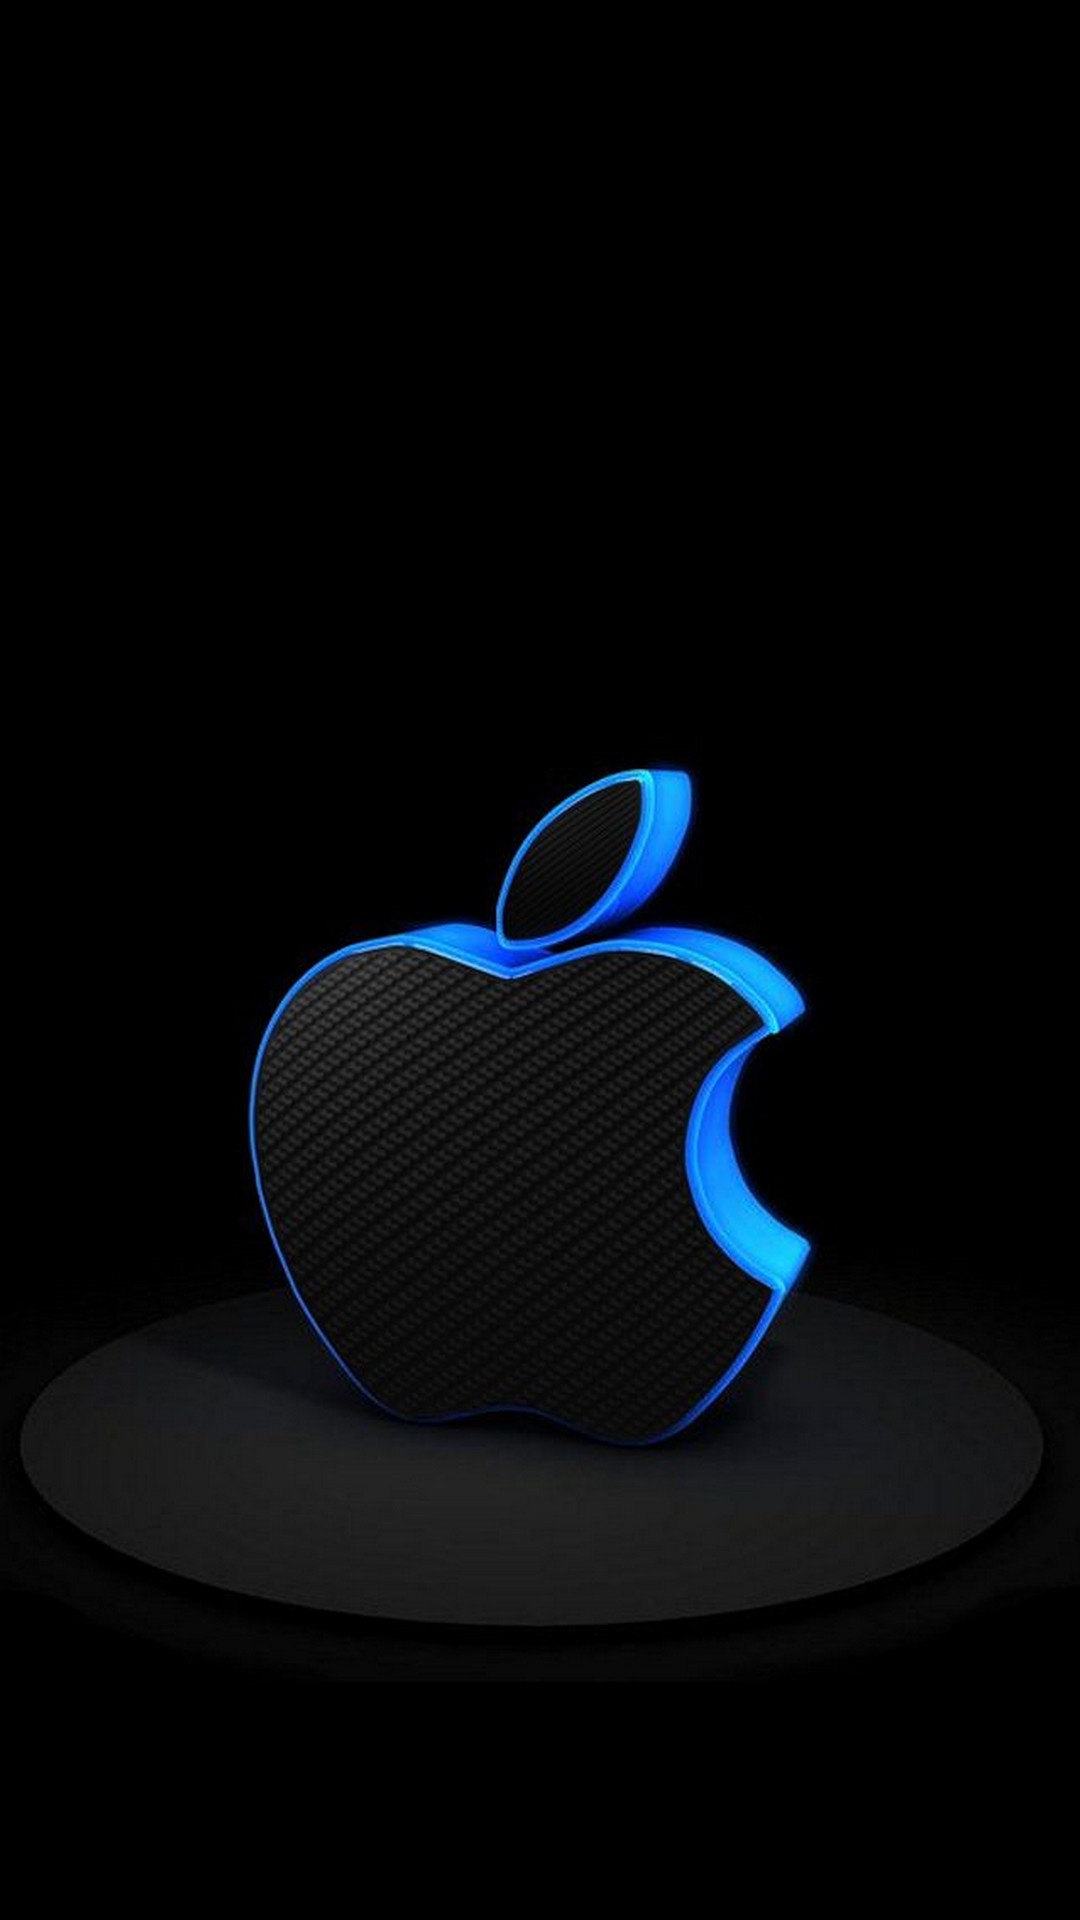 3D iPhone Logo Wallpaper Blue resolution 1080x1920